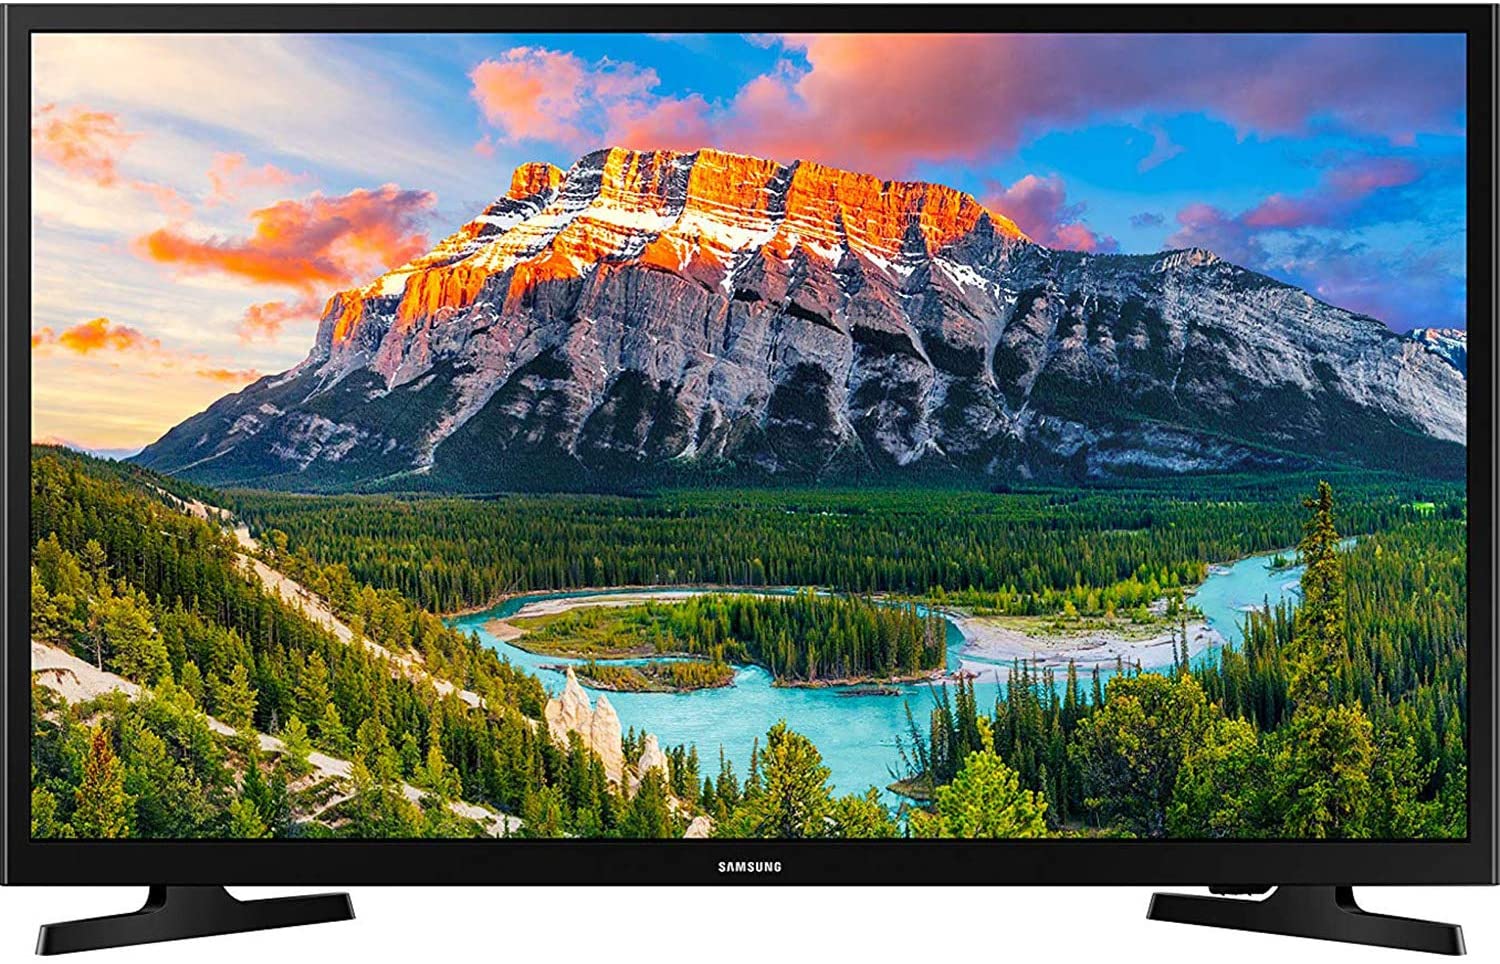 Samsung UN32N5300AFXZA - 32 inch Smart TV